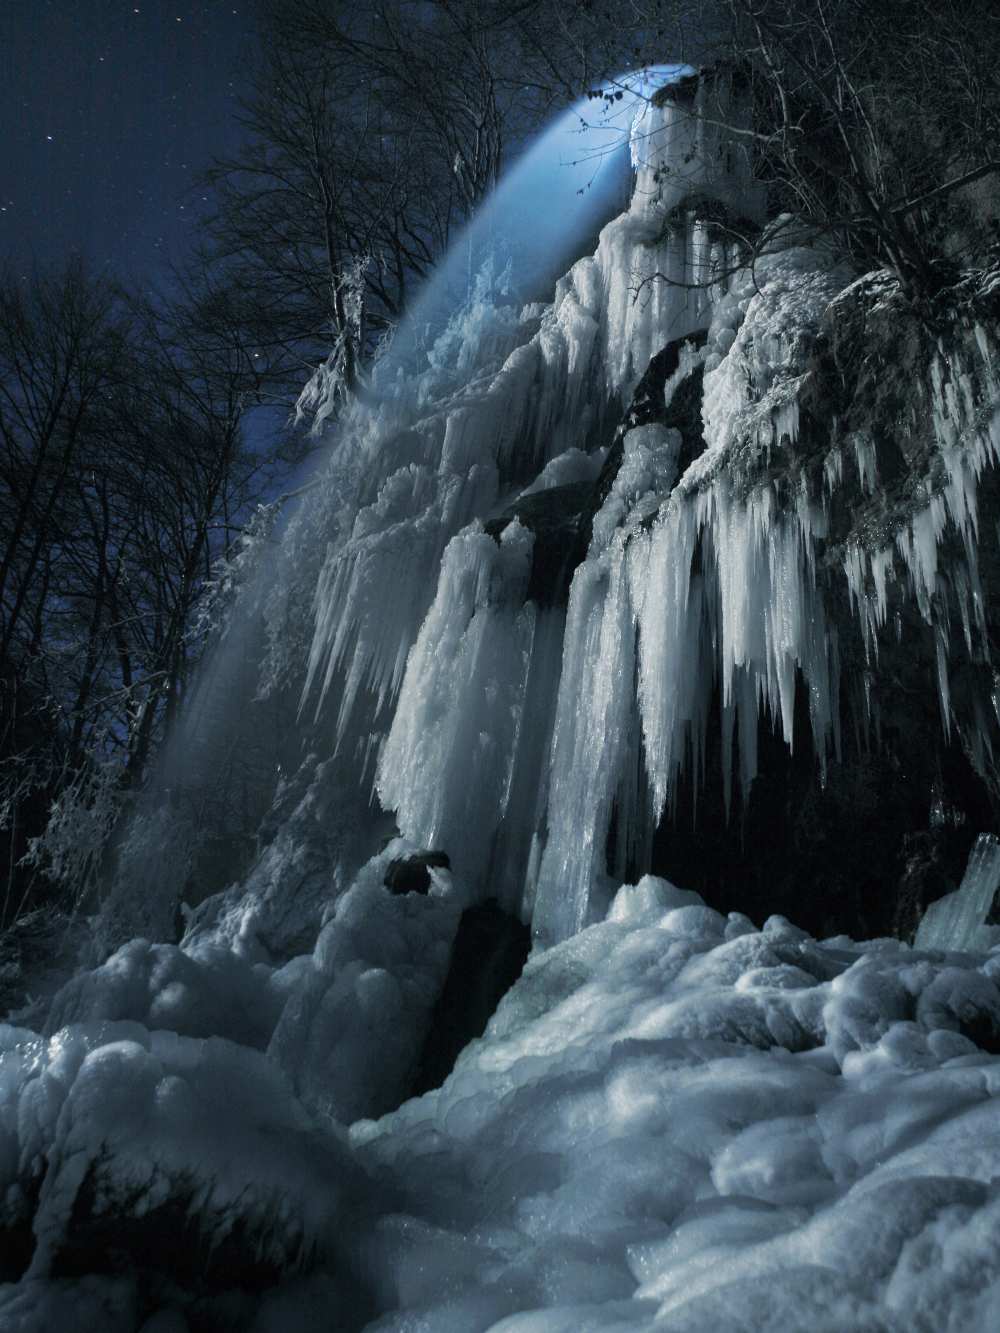 Eisfall im Mondlicht from Franz Schumacher